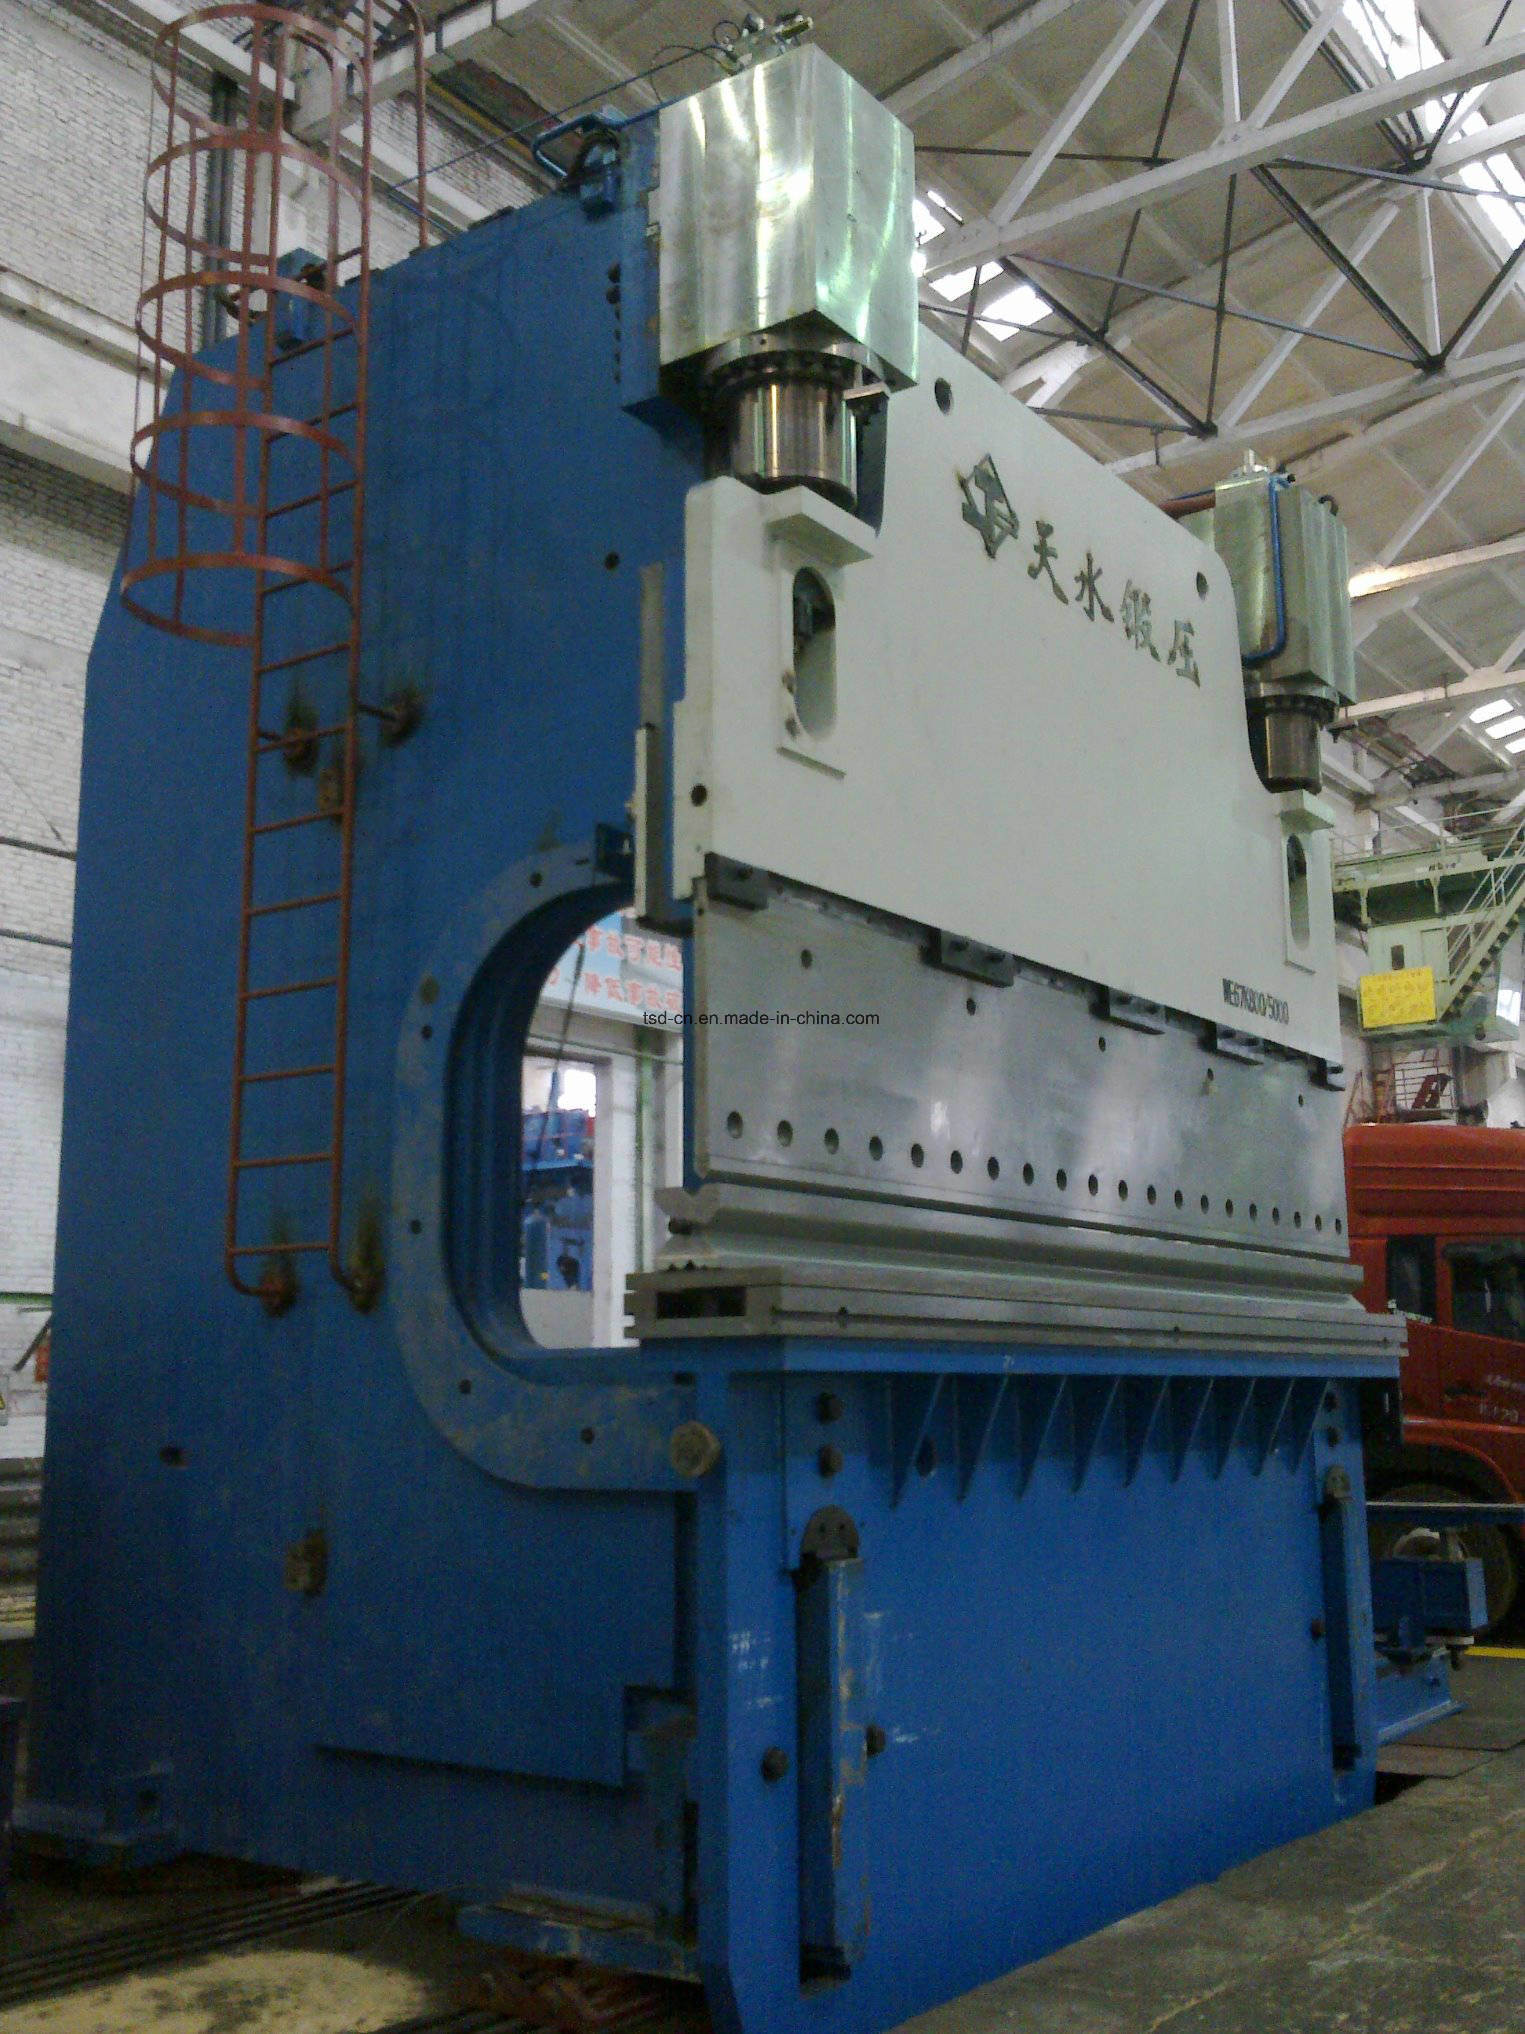 Prensa plegadora hidráulica CNC grande de 800 t / 5 m (WE67K-800 t / 5000 mm)